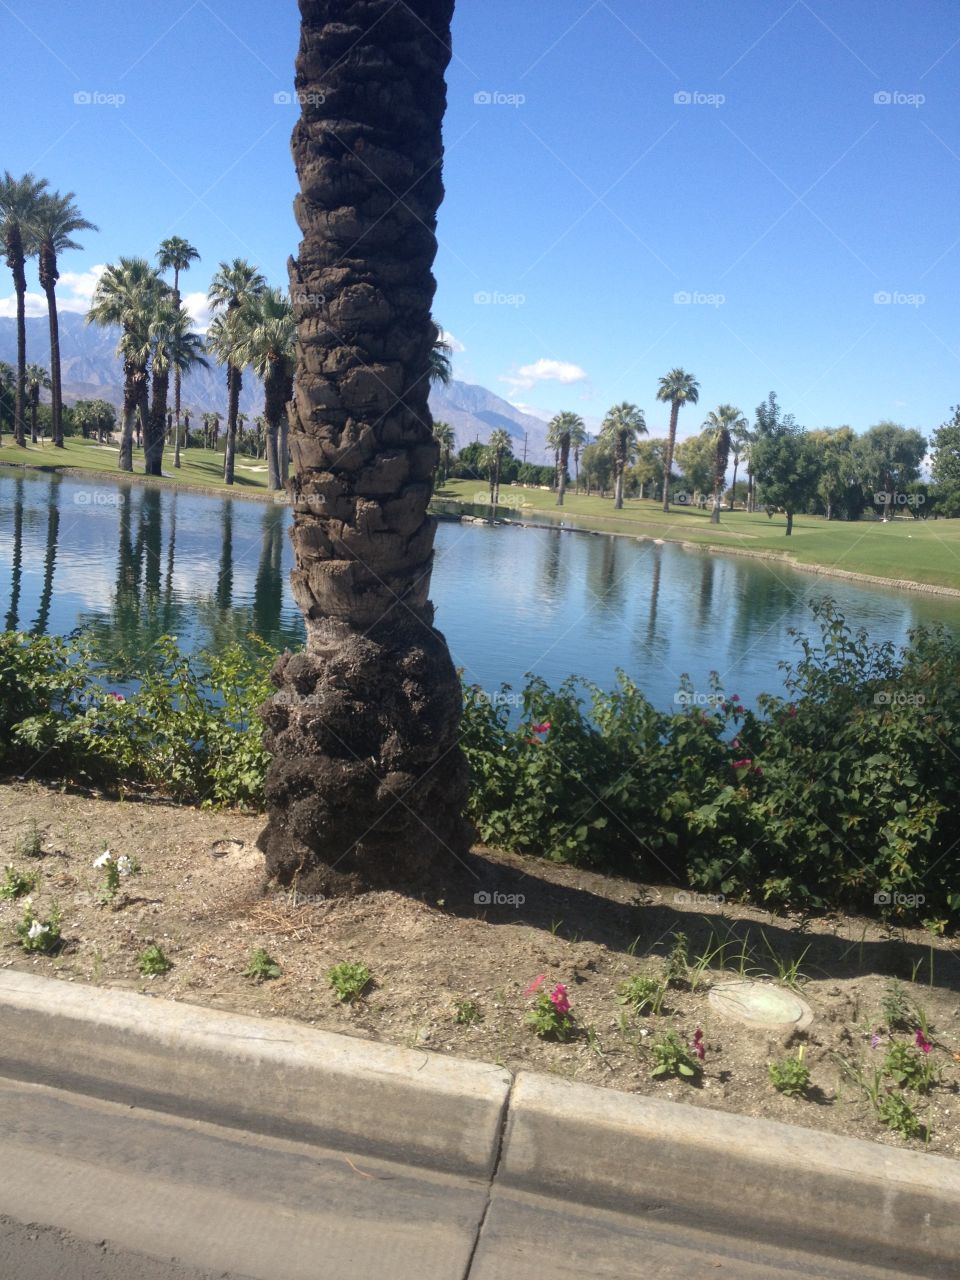 Palm Springs 